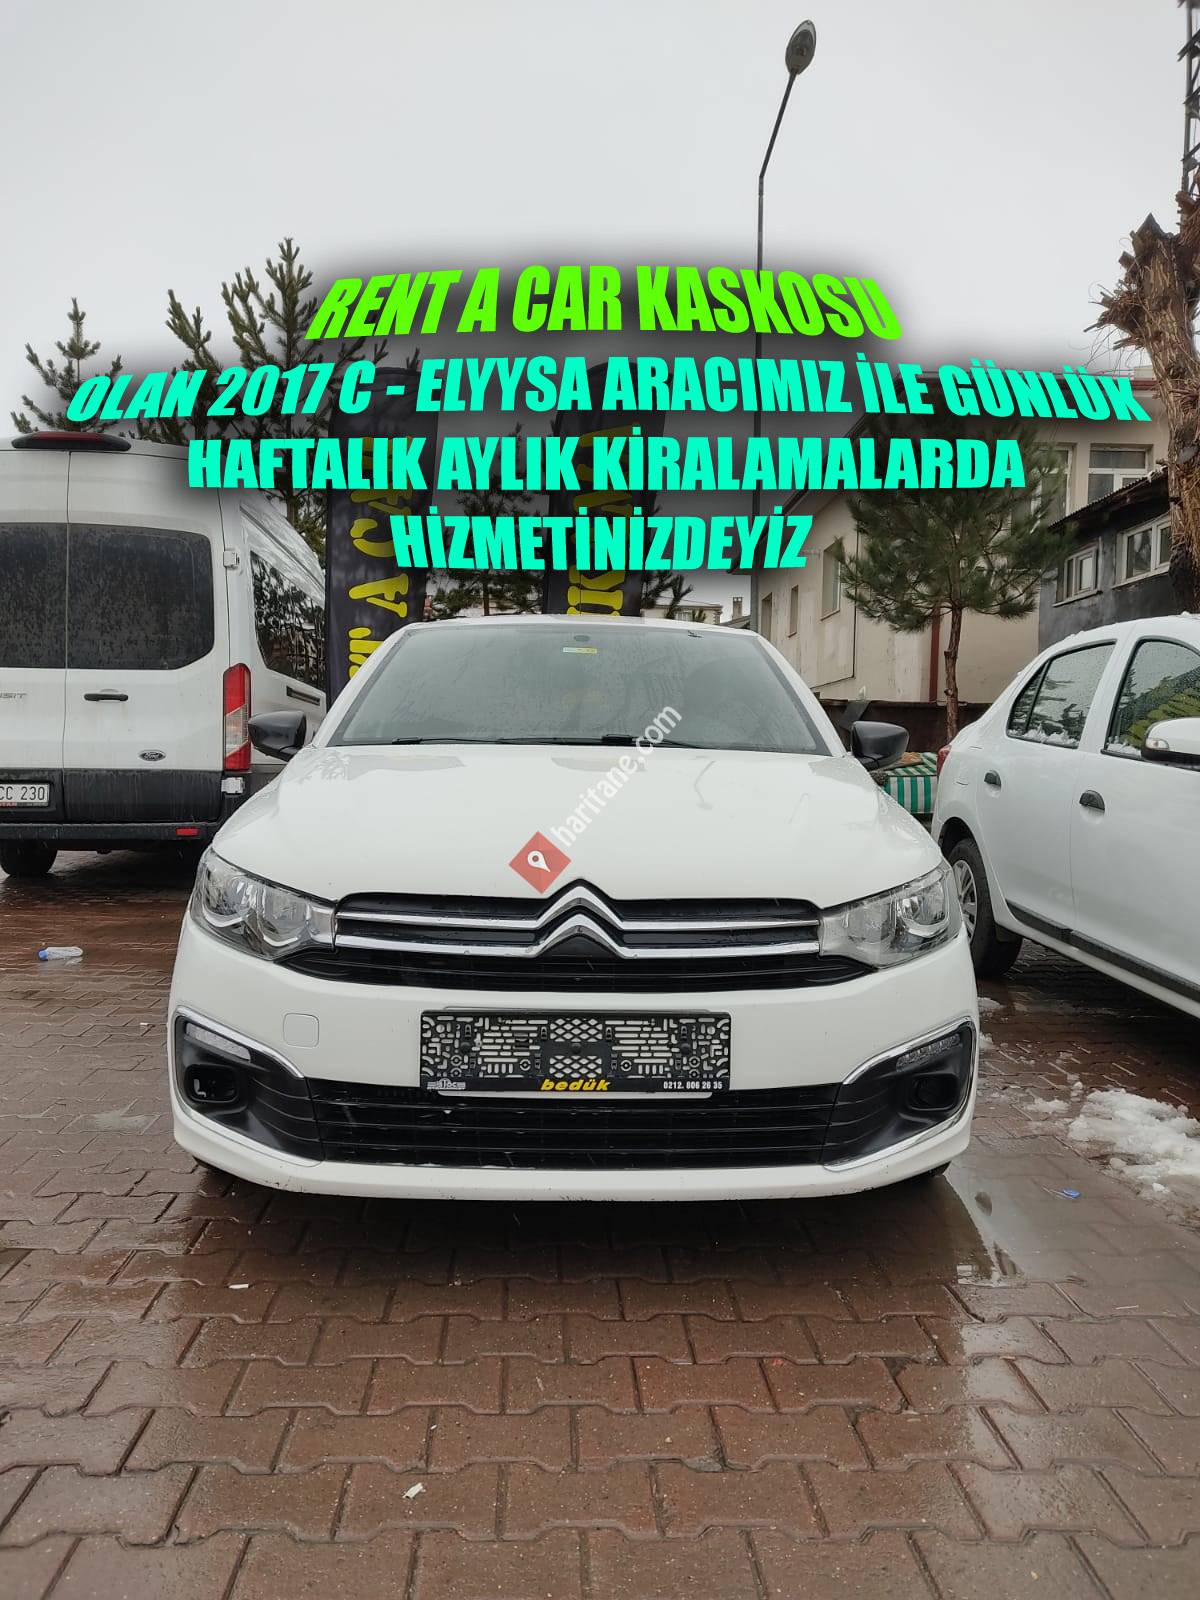 ZARA KARDEŞ RENT A CAR